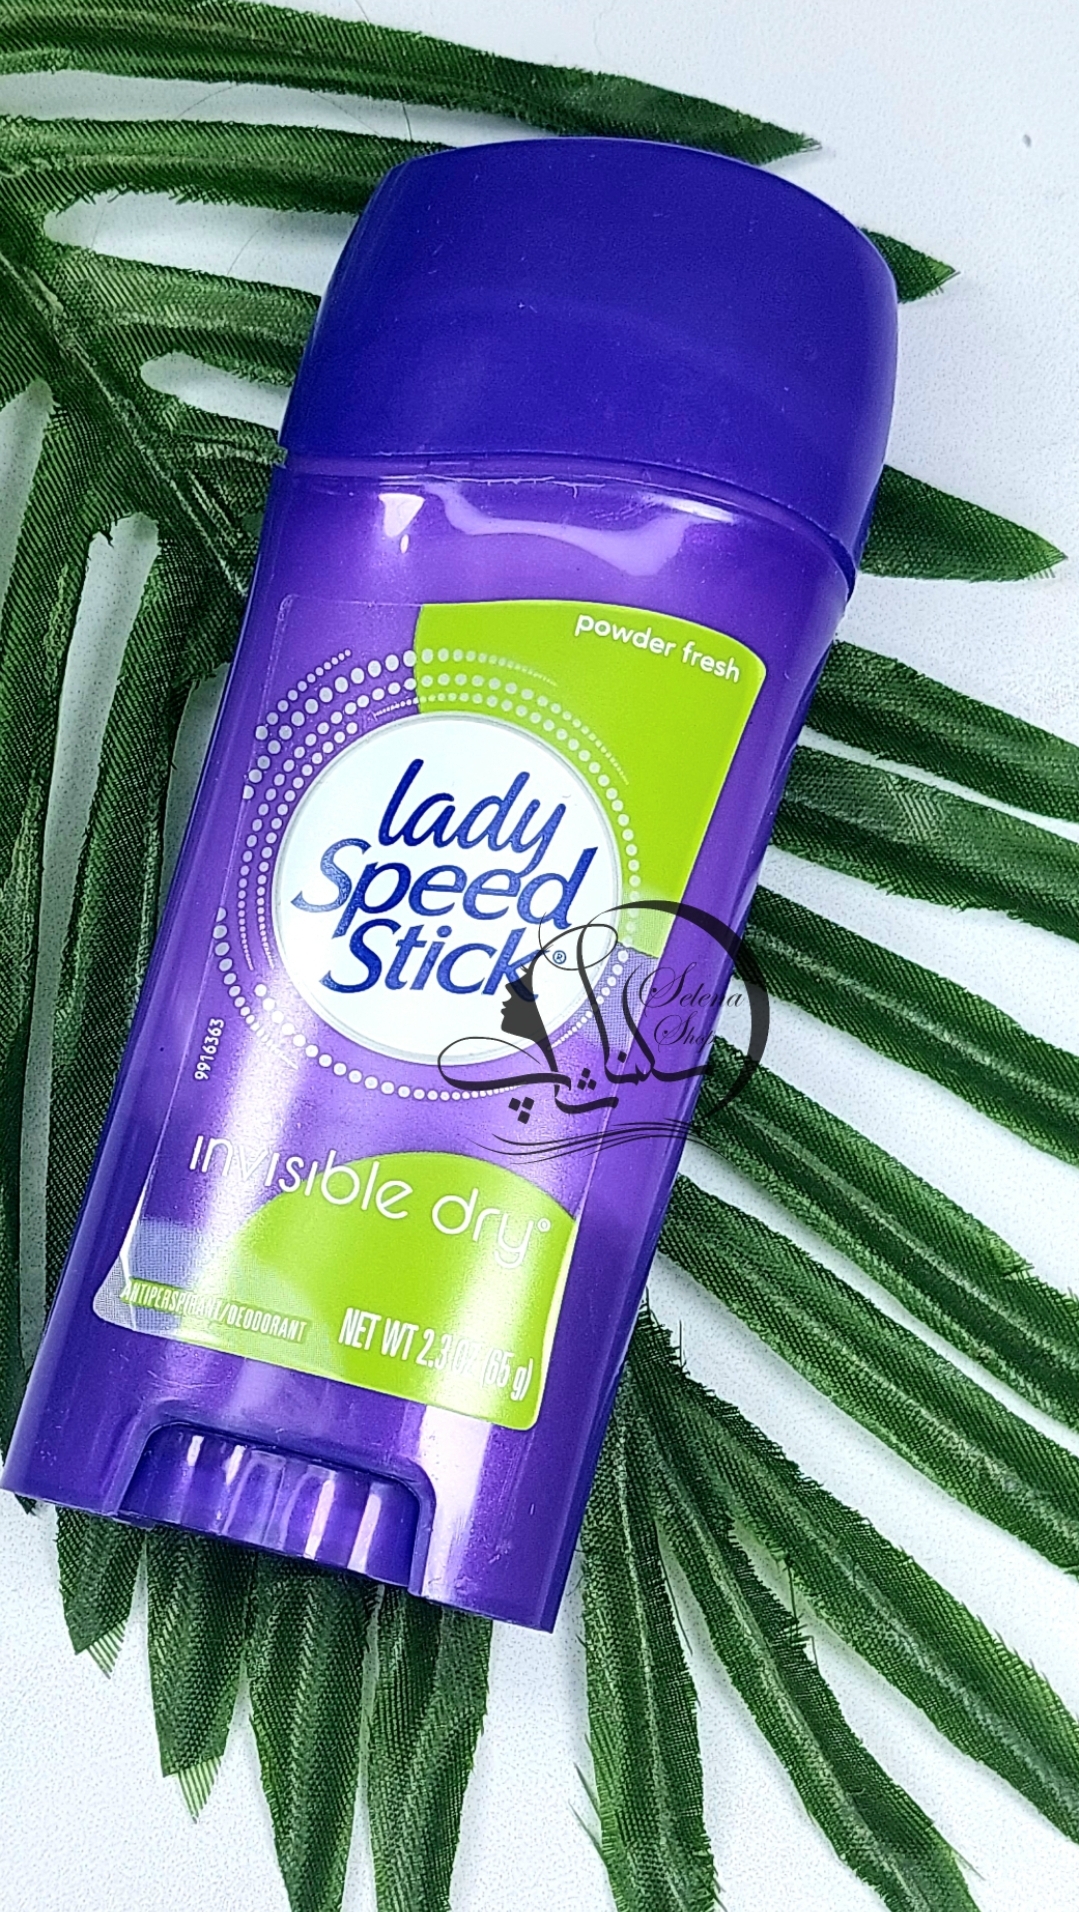 مام صابونی لیدی اسپید۴۰گرمی استیک مدل پادر فرش اصل (آمریکایی) Lady Speed Stick Deodorant Invisible Dry Powder Fresh